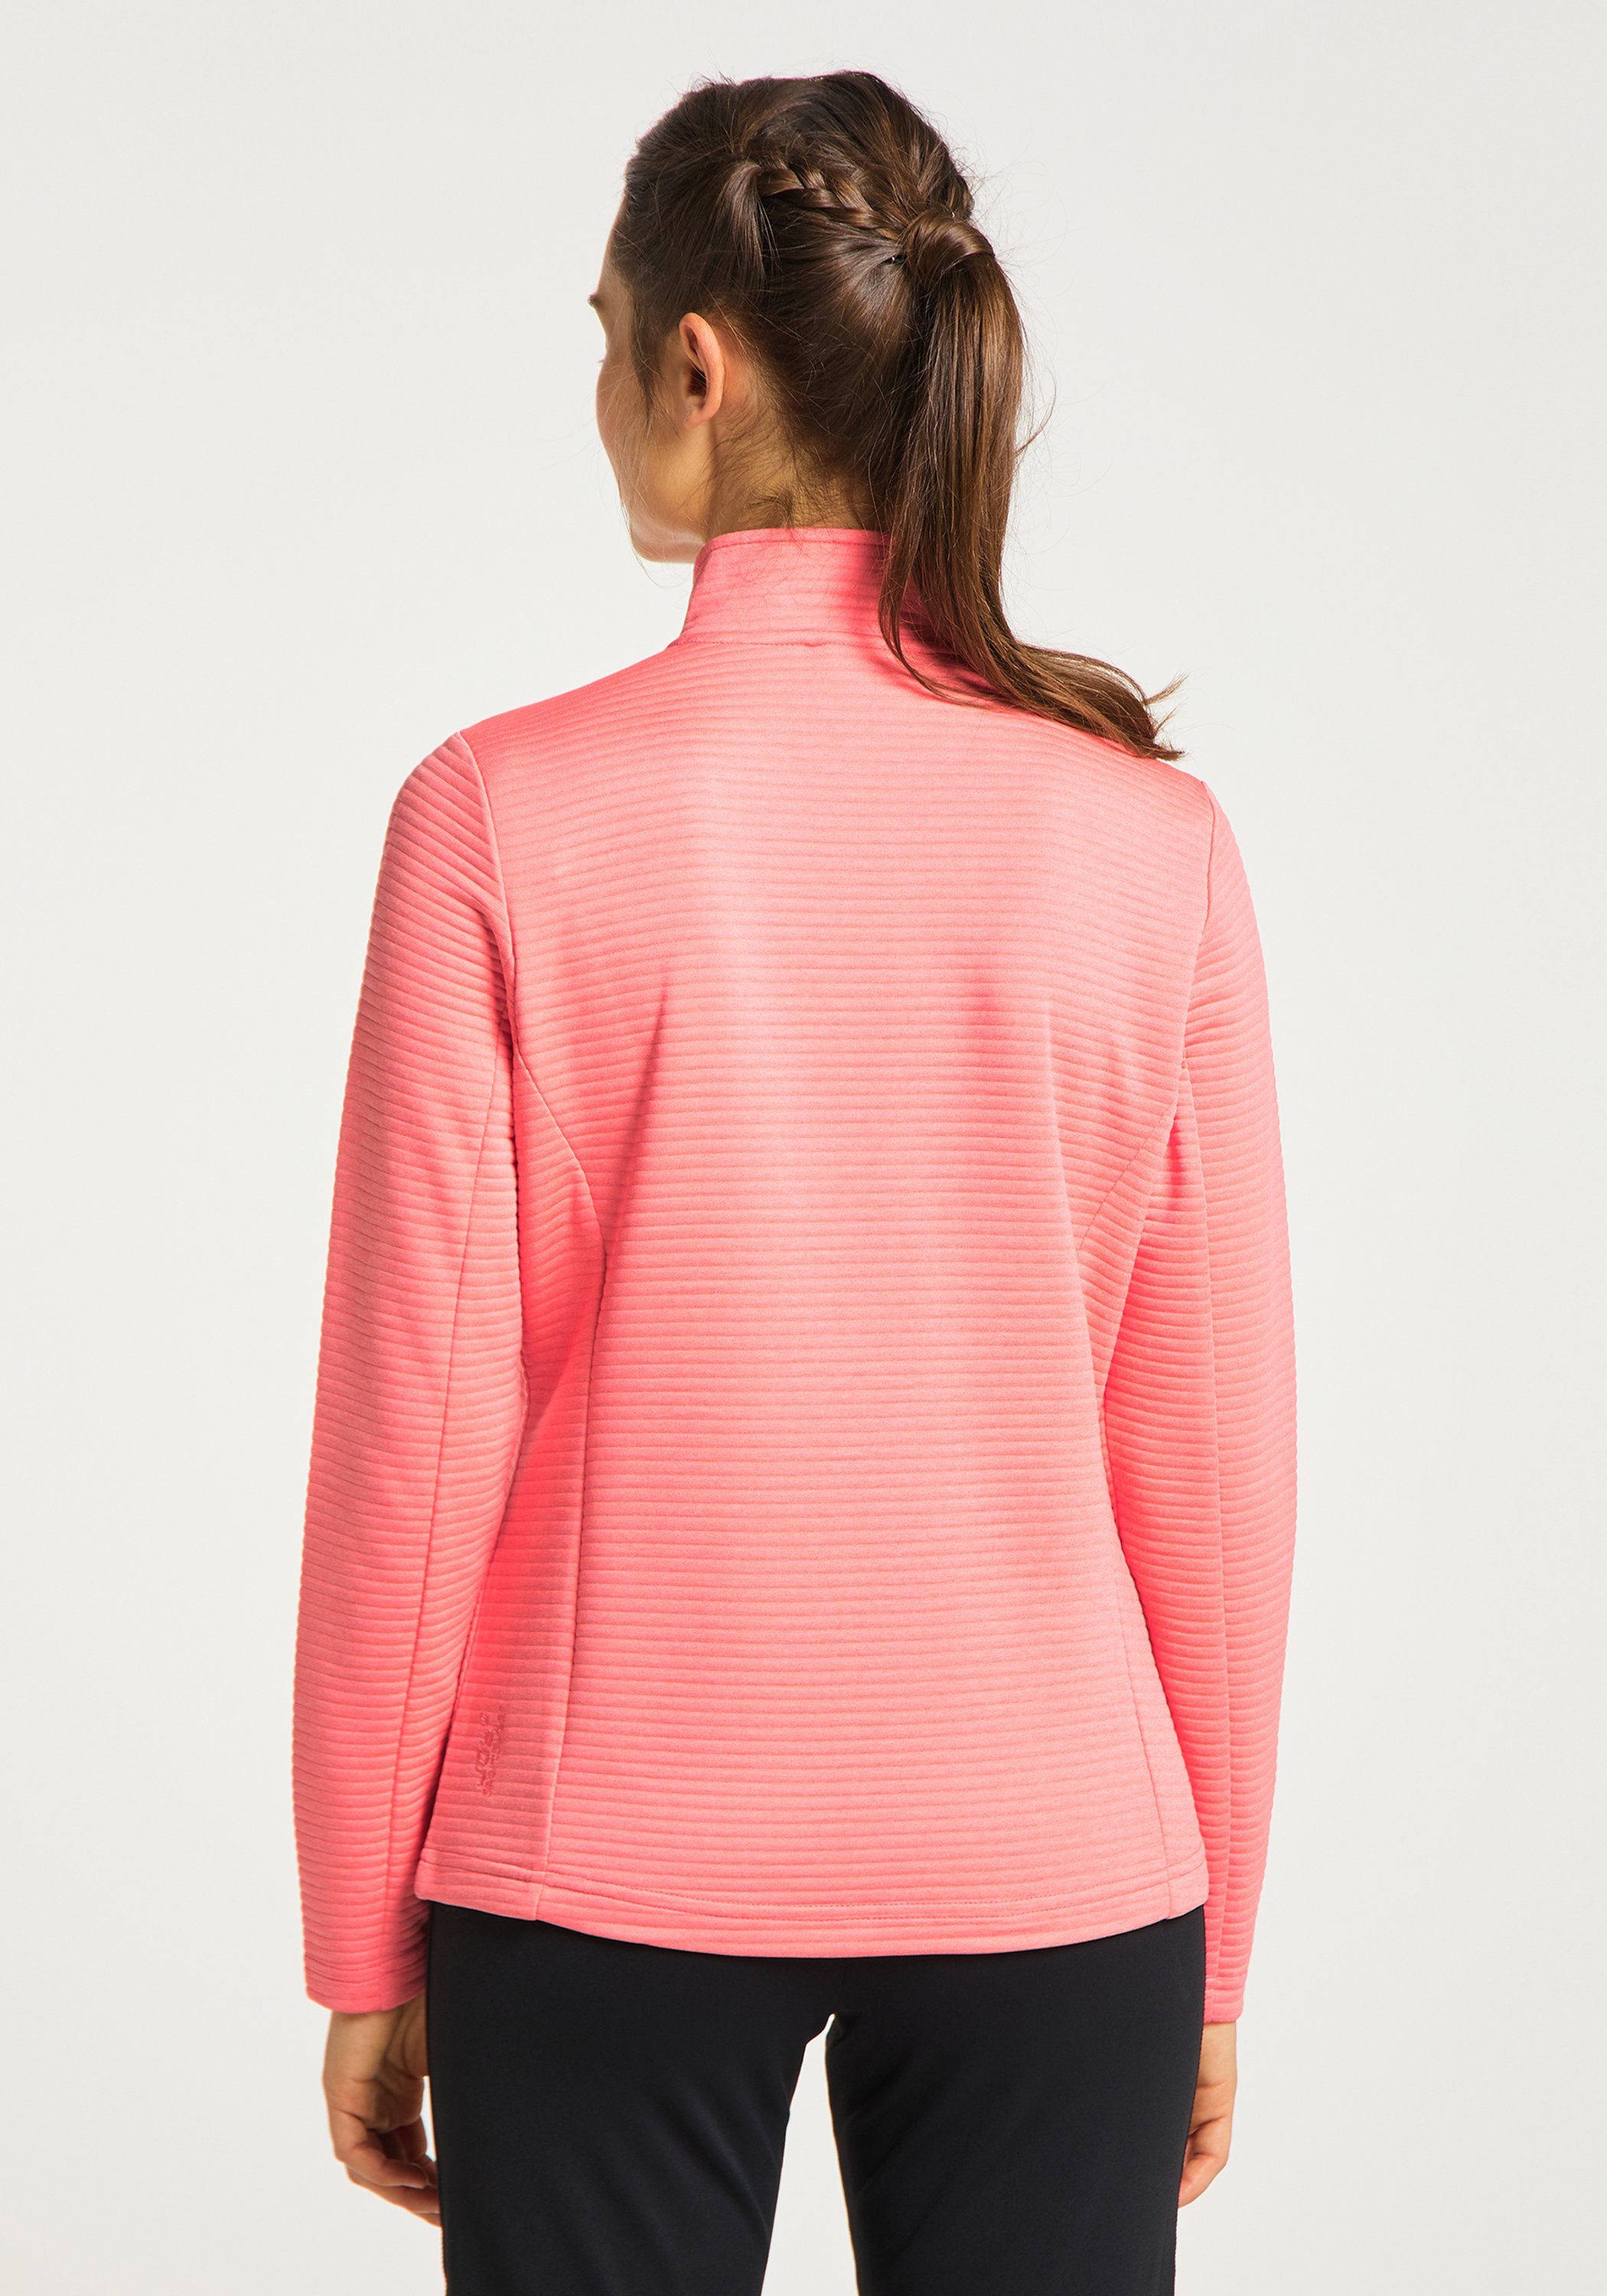 Trainingsjacke Sportswear Jacke melange coral pink Joy PEGGY